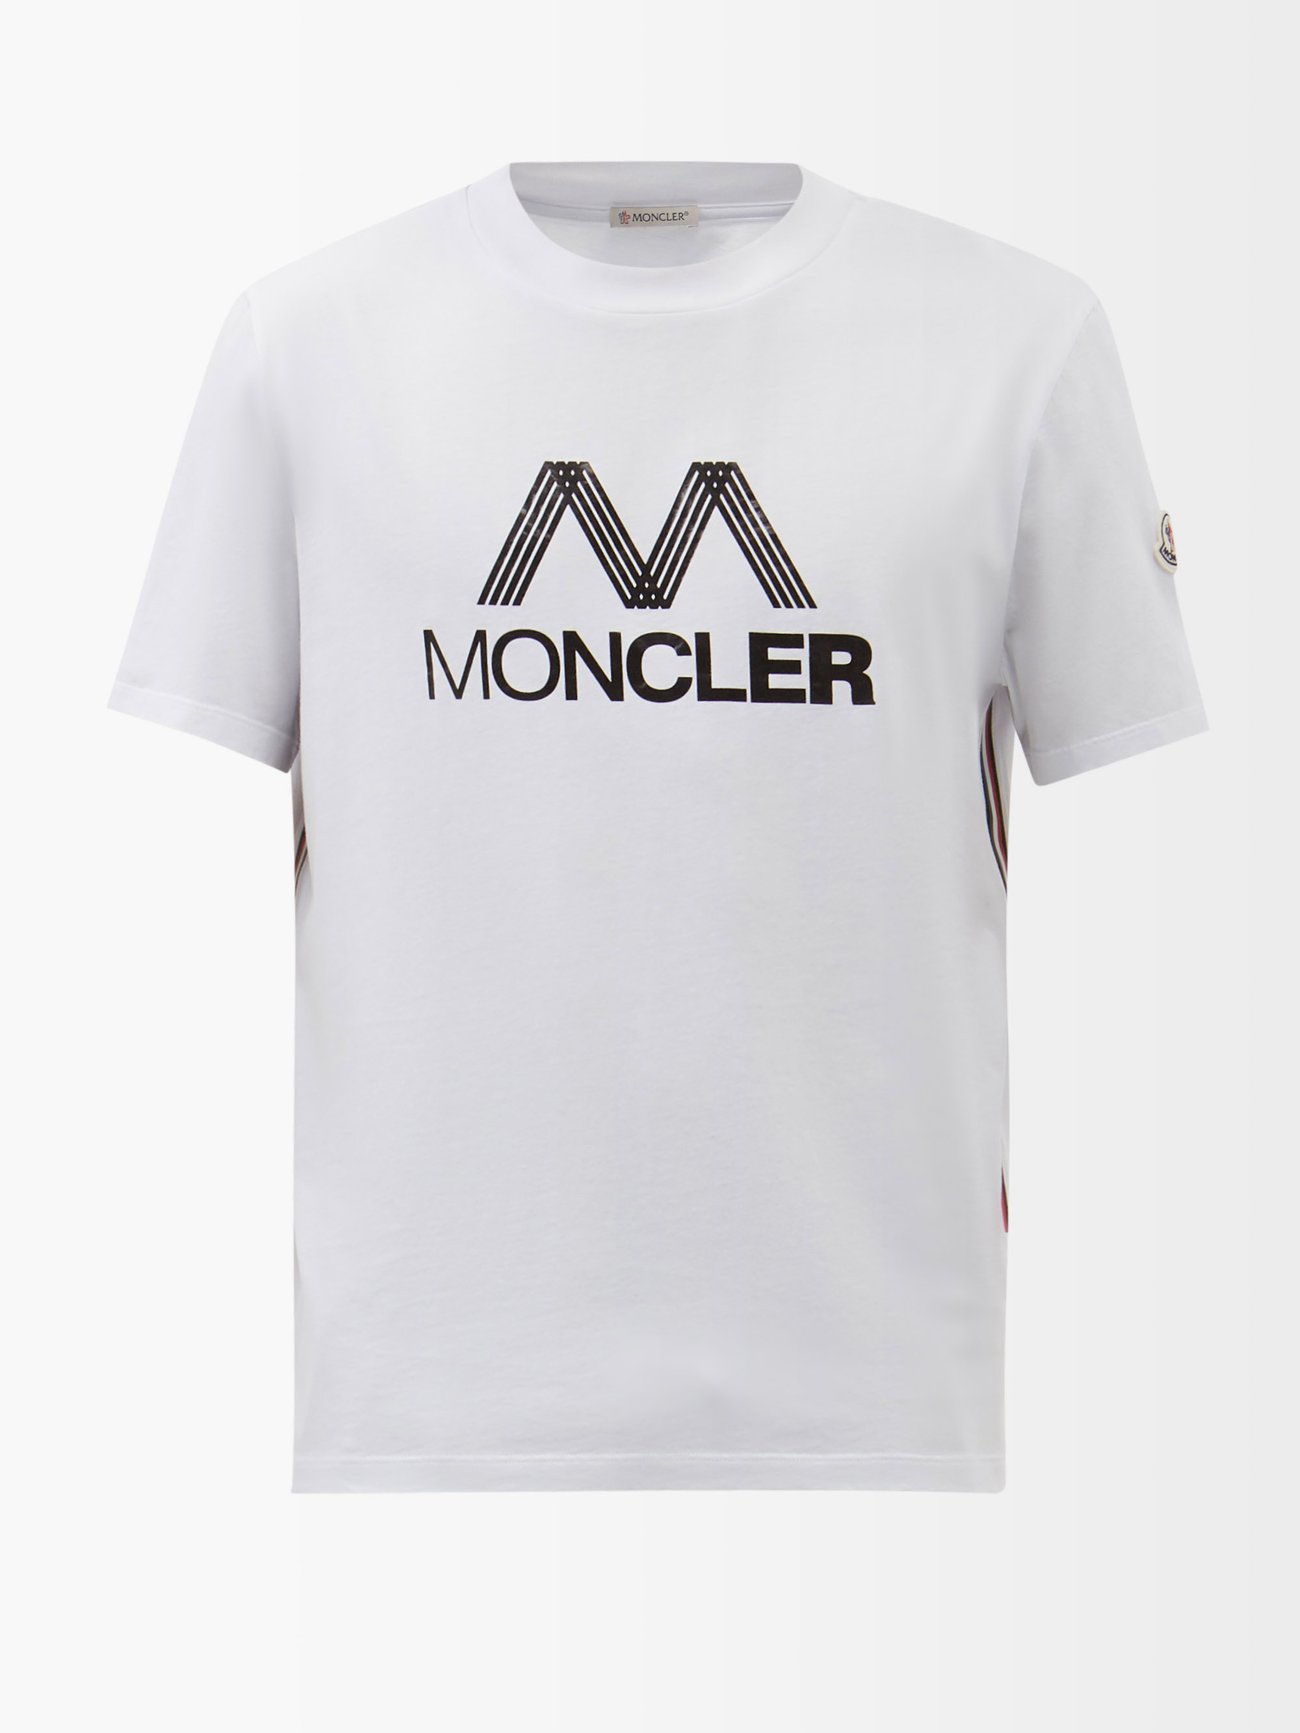 モンクレール MONCLER メンズロゴTシャツ 半袖 カットソー蛍光色 S